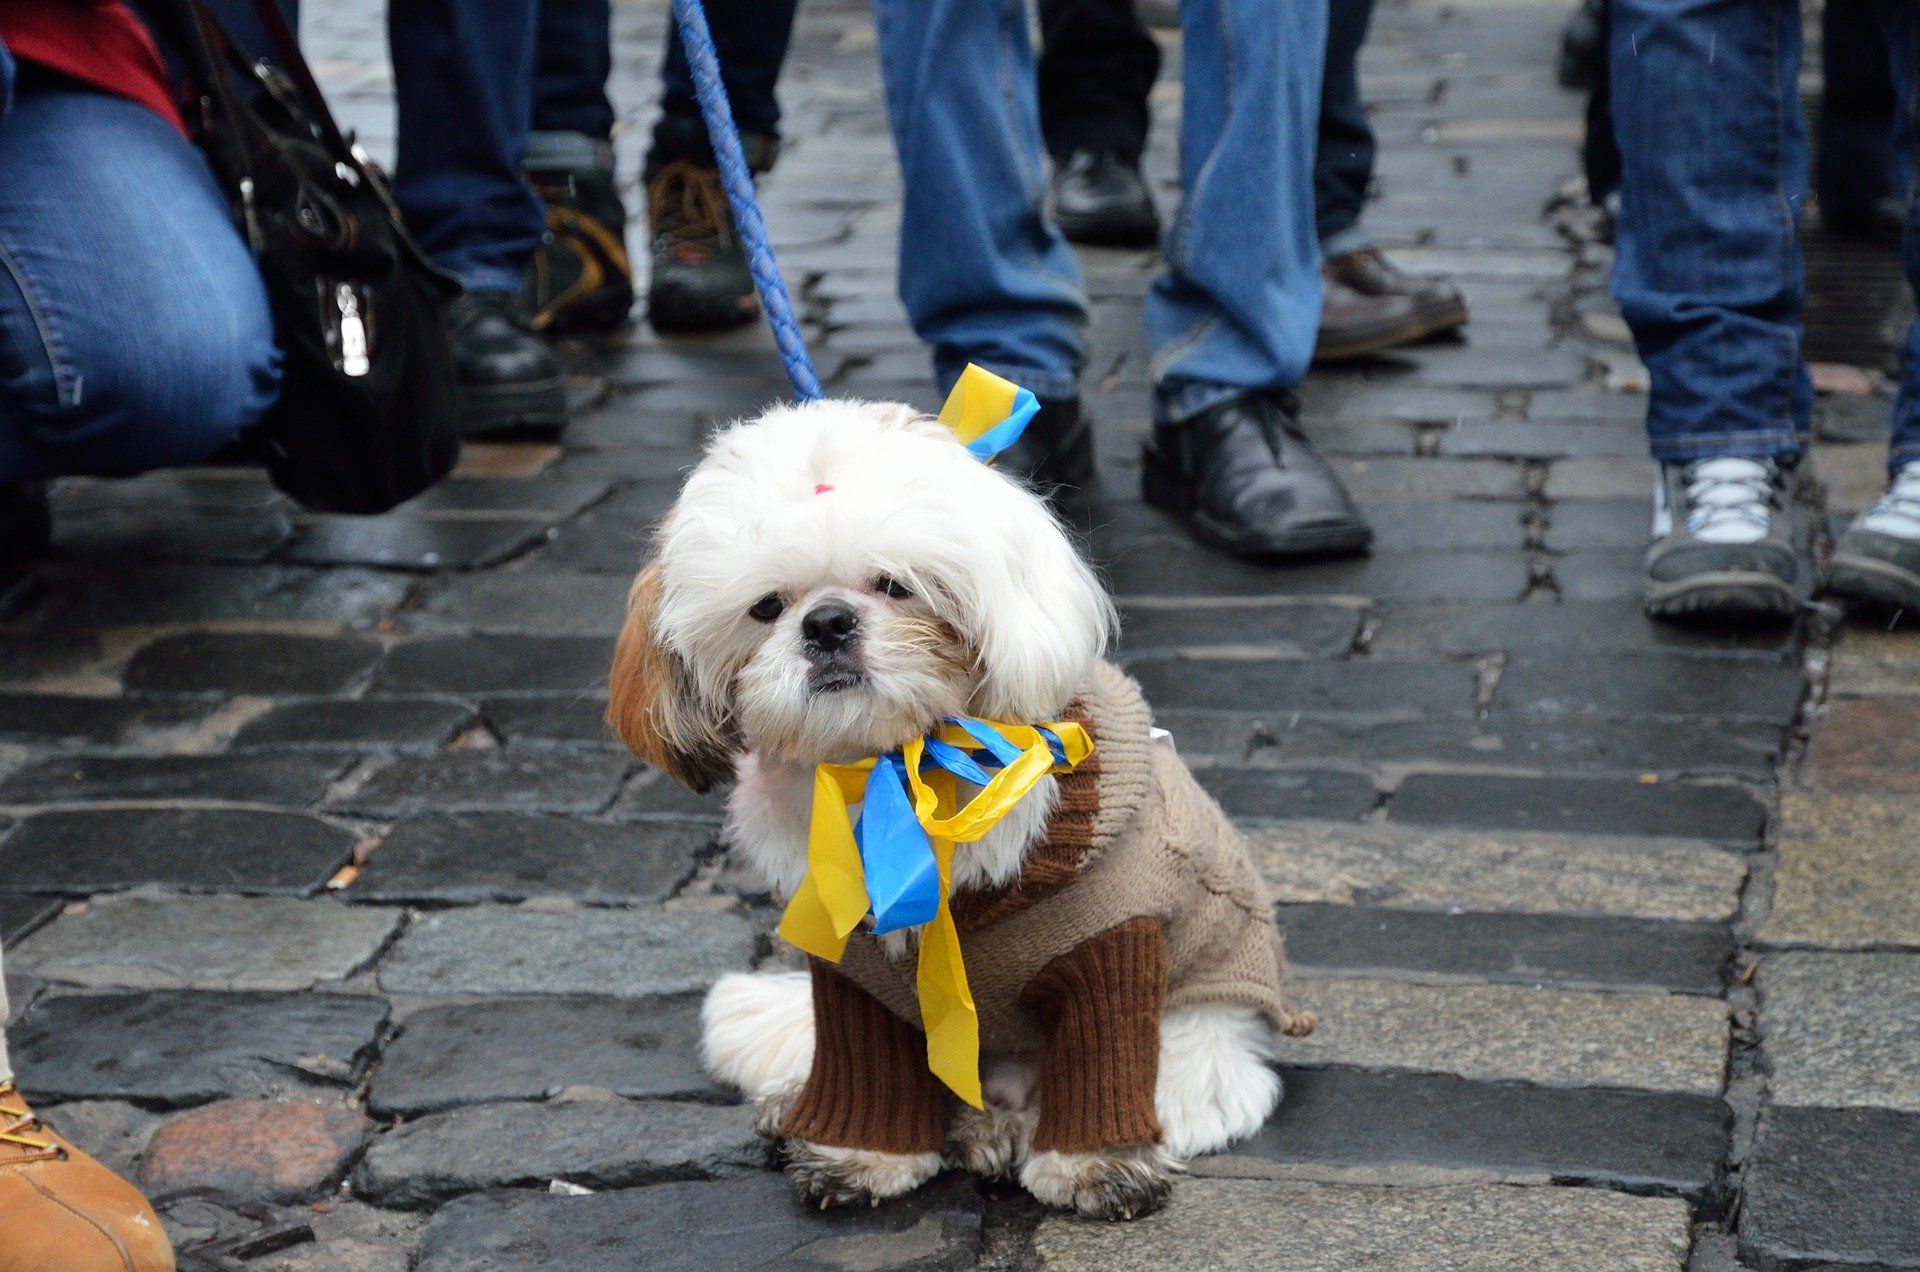 kleiner Hund bei Demonstration mit Halsband in den Farben gelb und blau